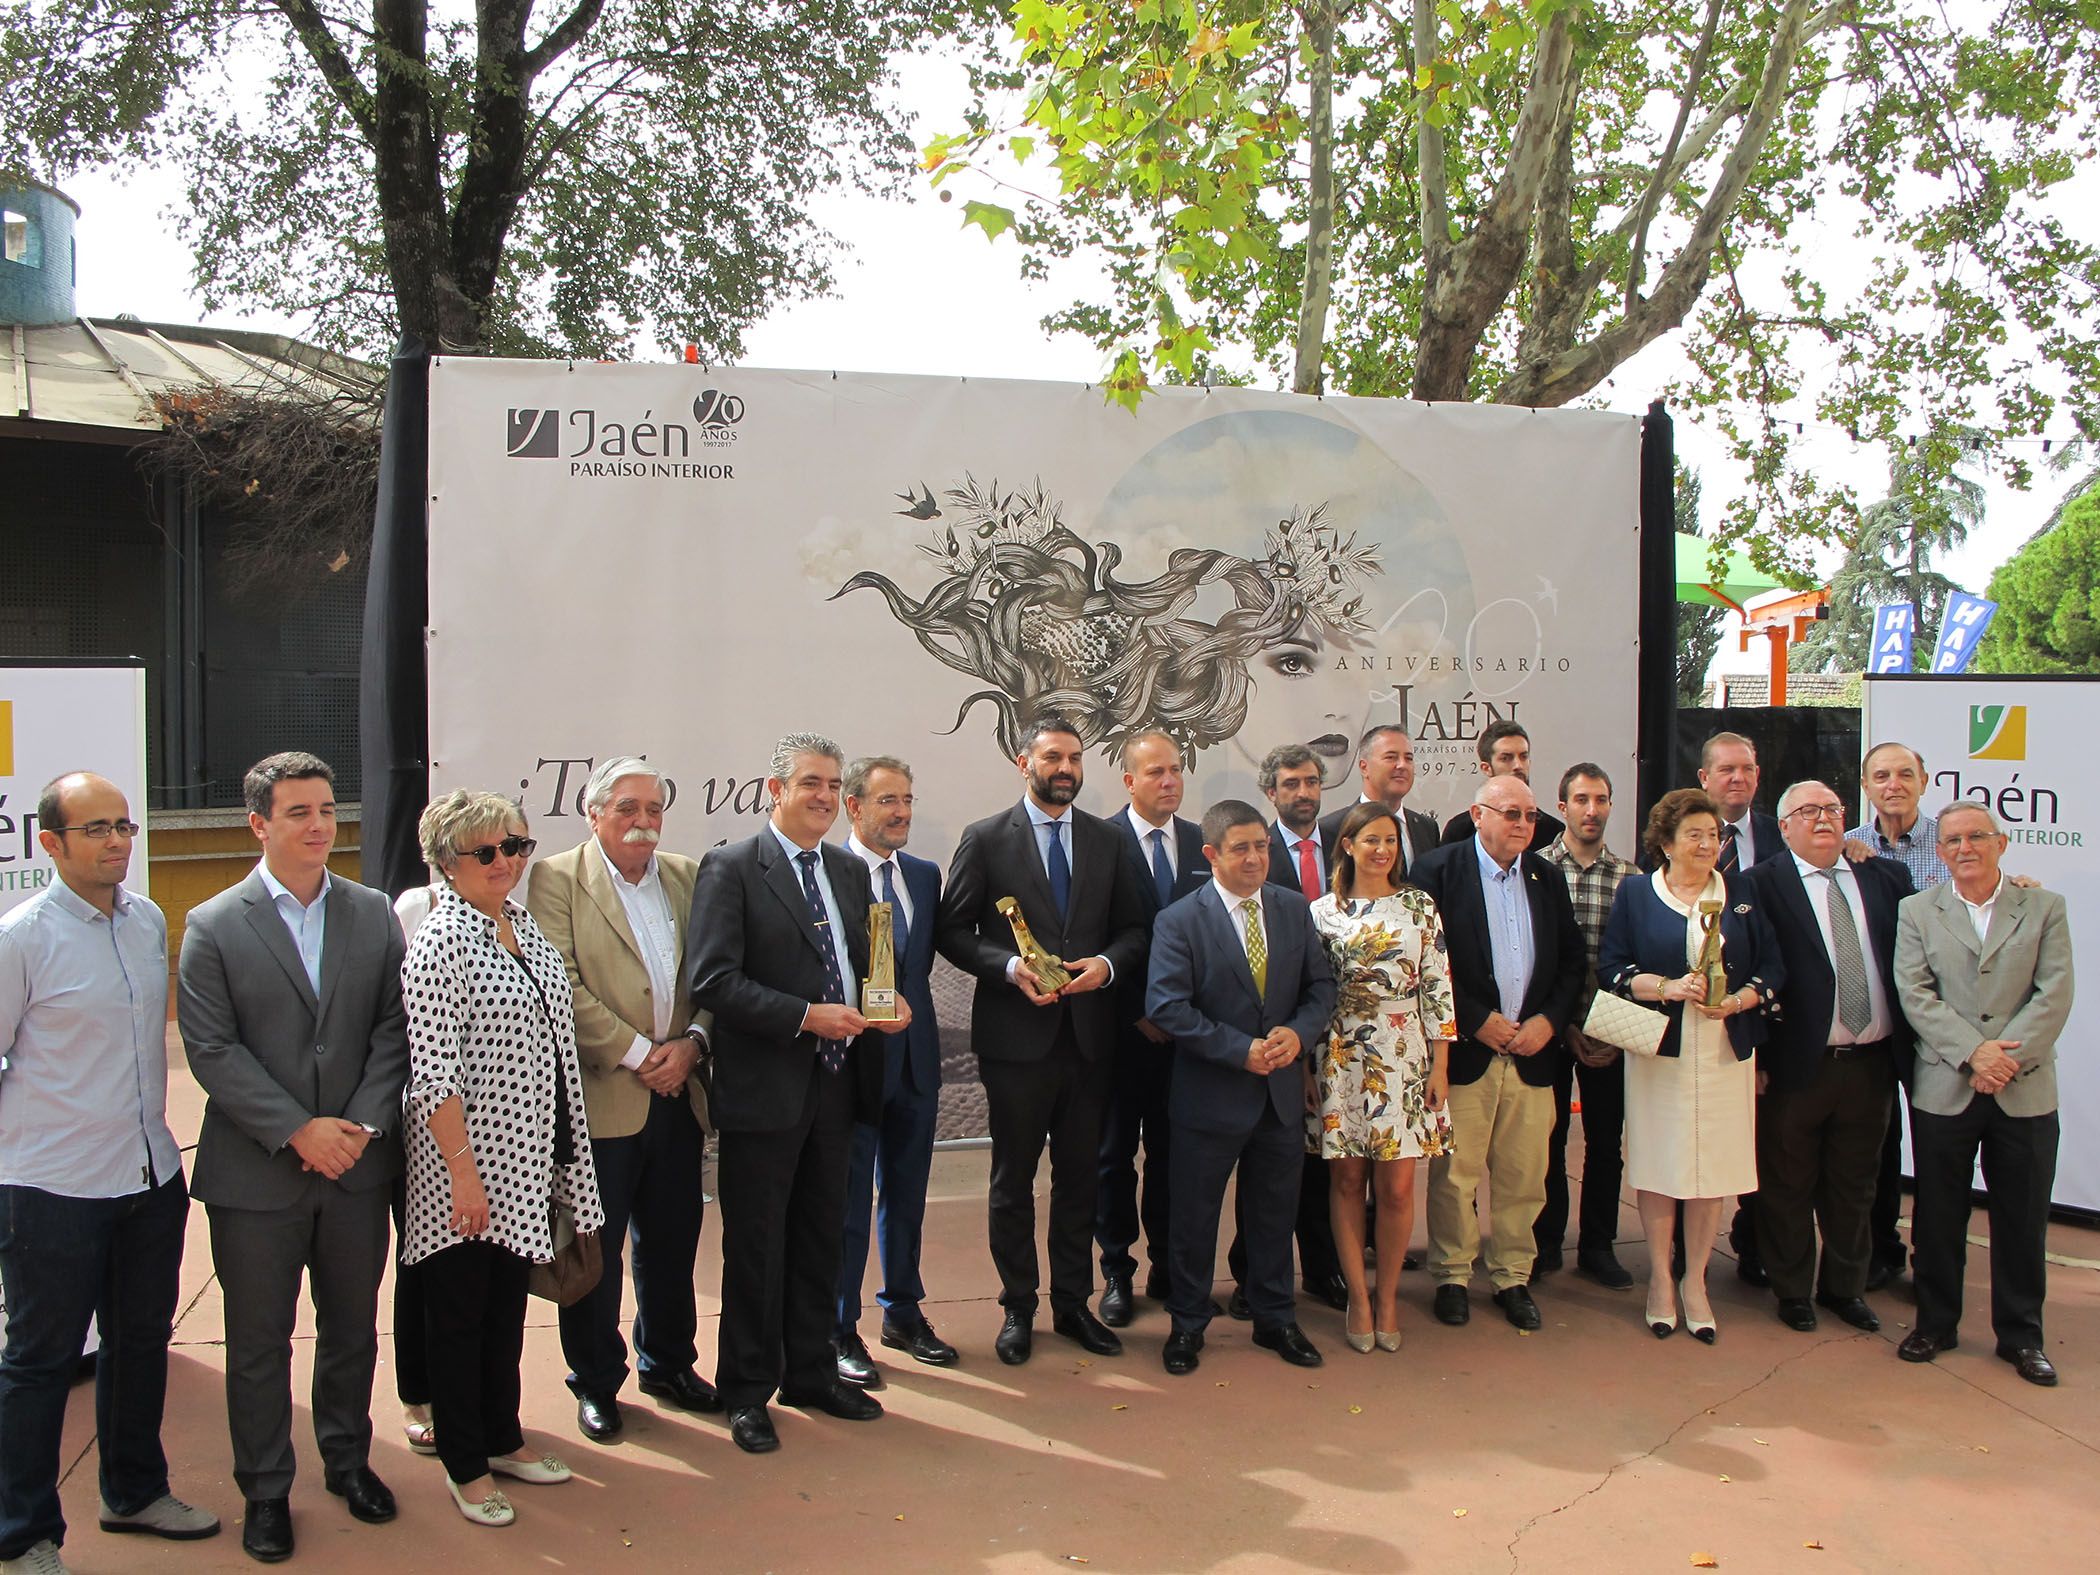 La Diputación entrega sus premios «Jaén, paraíso interior», celebrando una oferta turística «sólida y cohesionada»